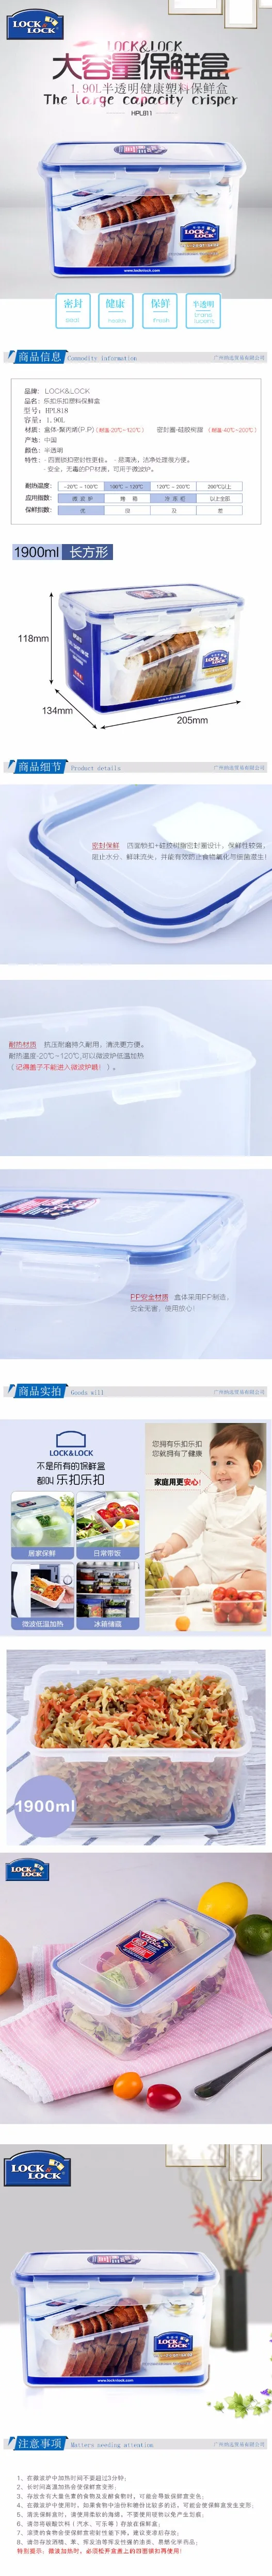 Пластиковая коробка для хранения свежести 1,9л прямоугольная большая емкость коробка для хранения холодильника HPL818